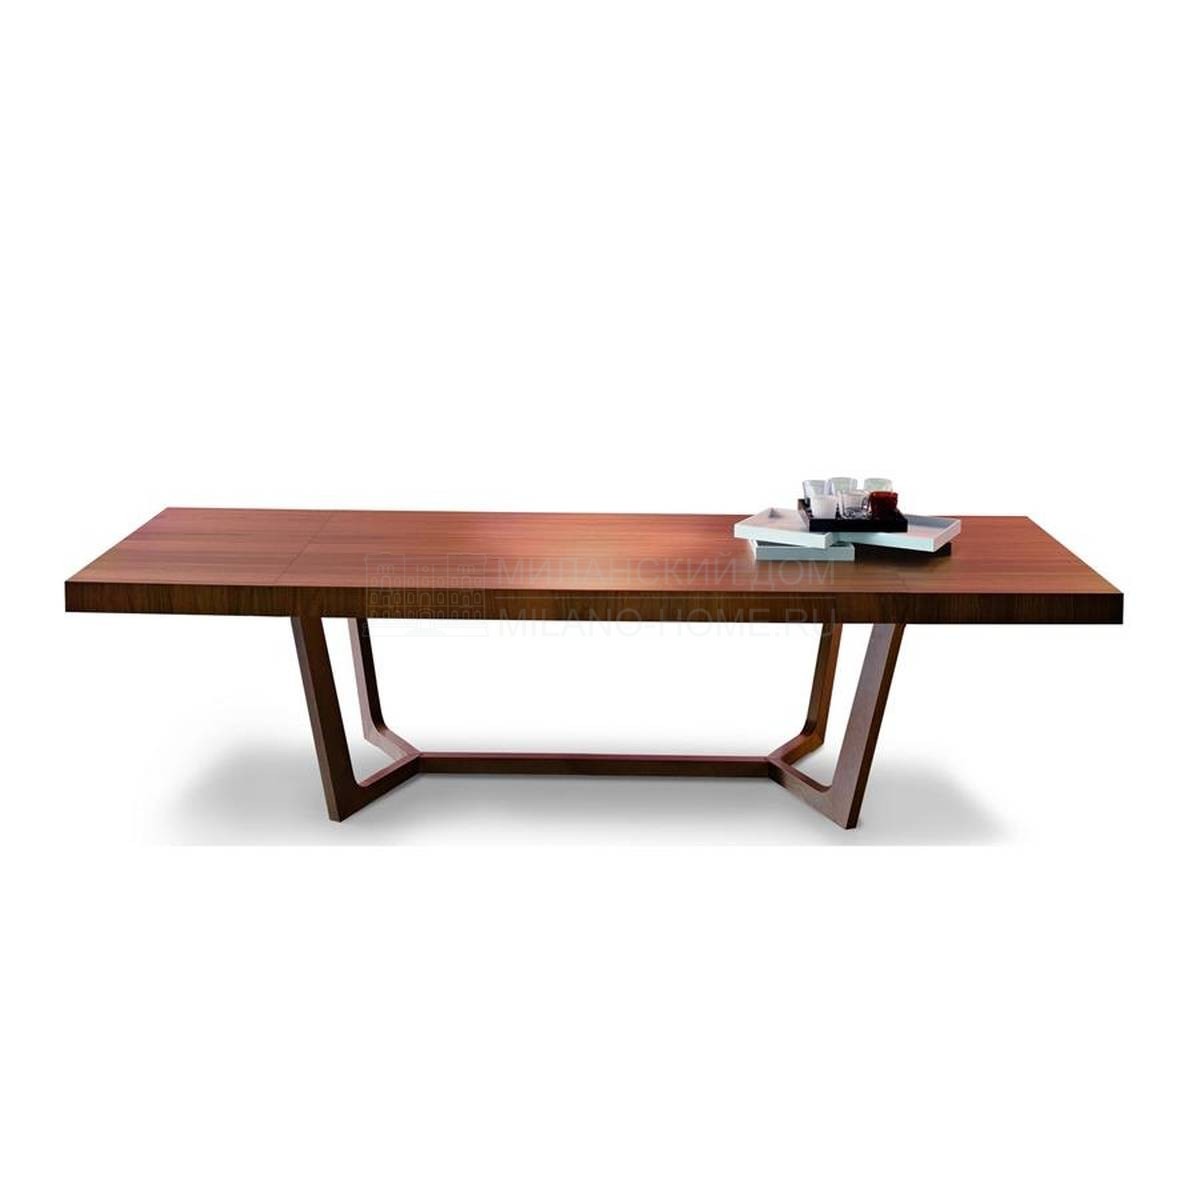 Обеденный стол Author/allungabile-table из Италии фабрики ASTER Cucine